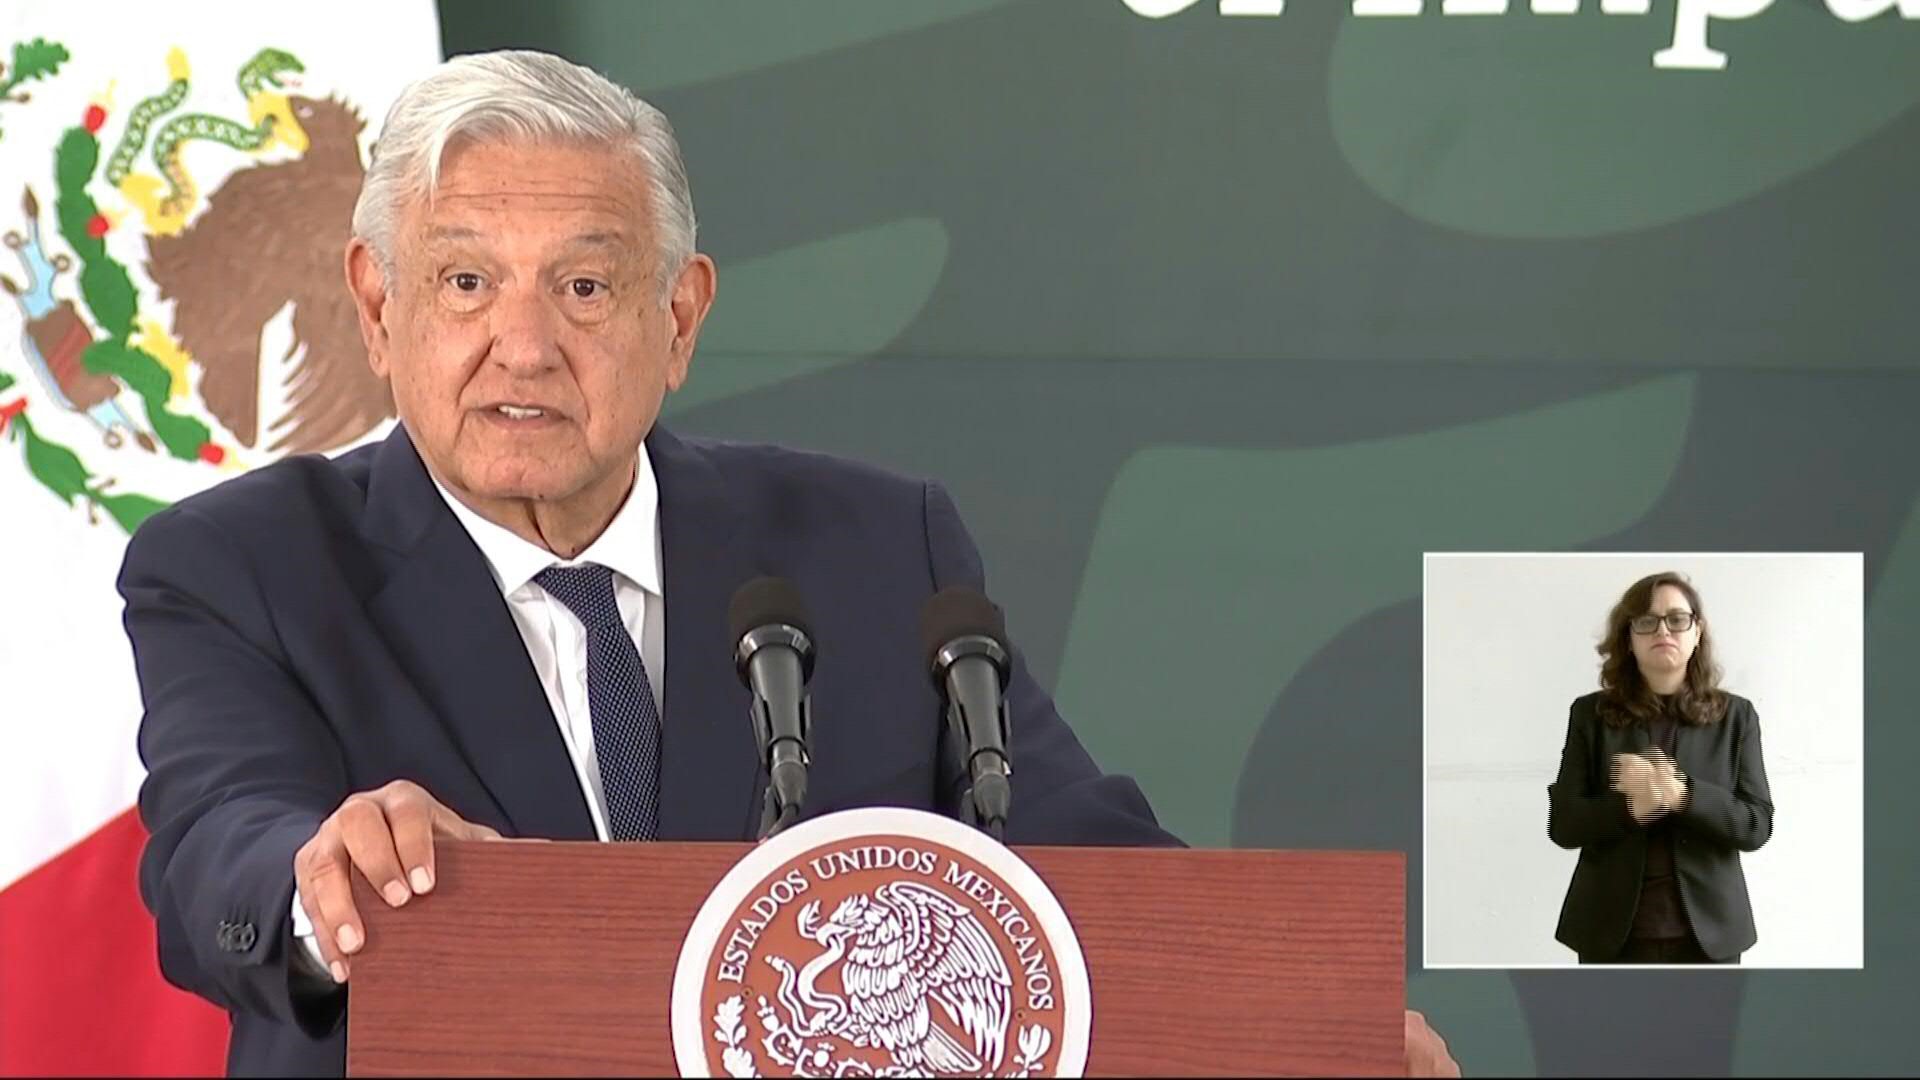 El presidente de México, Andrés Manuel López Obrador, prometió el miércoles "cero impunidad" y reconocimiento tanto a civiles como a militares caídos durante la llamada Guerra Sucia, cuando el Estado cometió crímenes como torturas, desapariciones y ejecuciones entre 1965 y 1990.